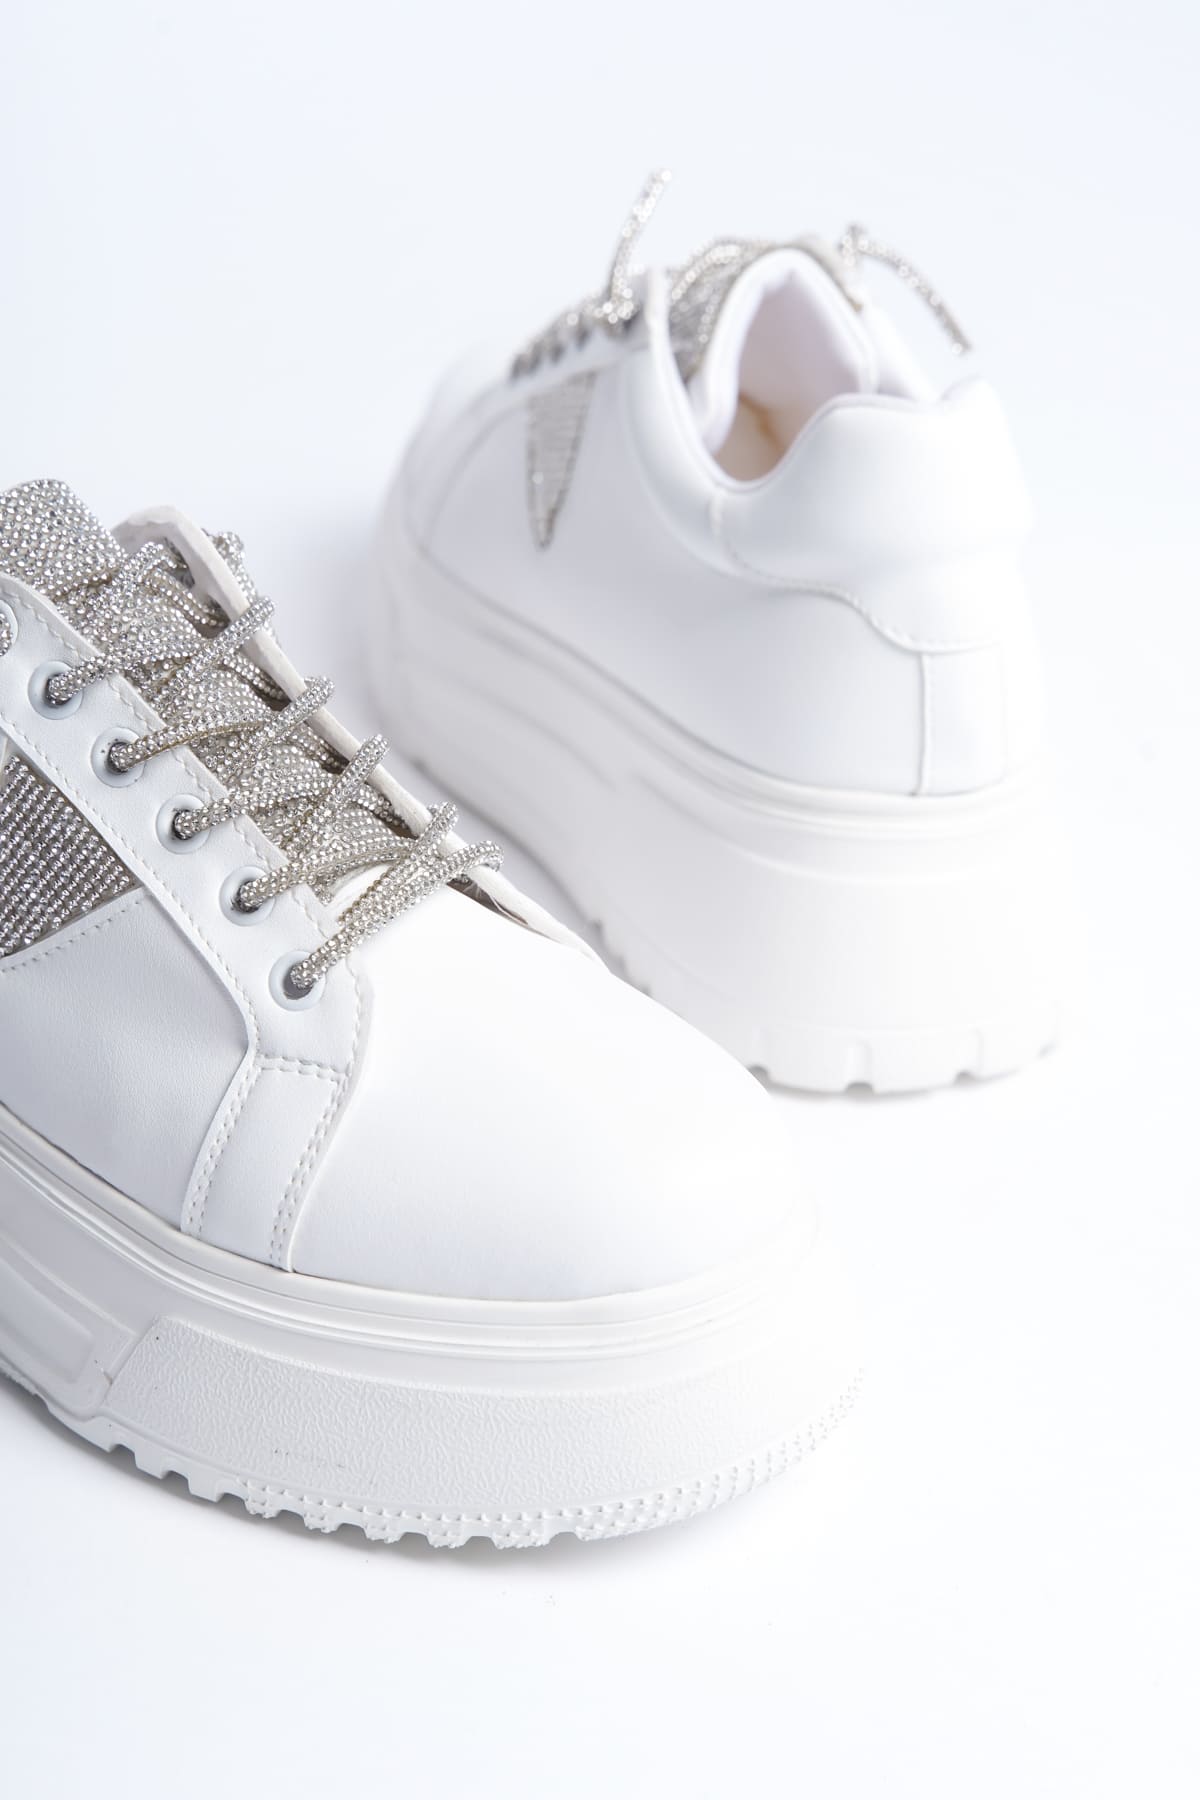 AYAS Bağcıklı Ortopedik Taban Taşlı Kadın Sneaker Ayakkabı  Beyaz